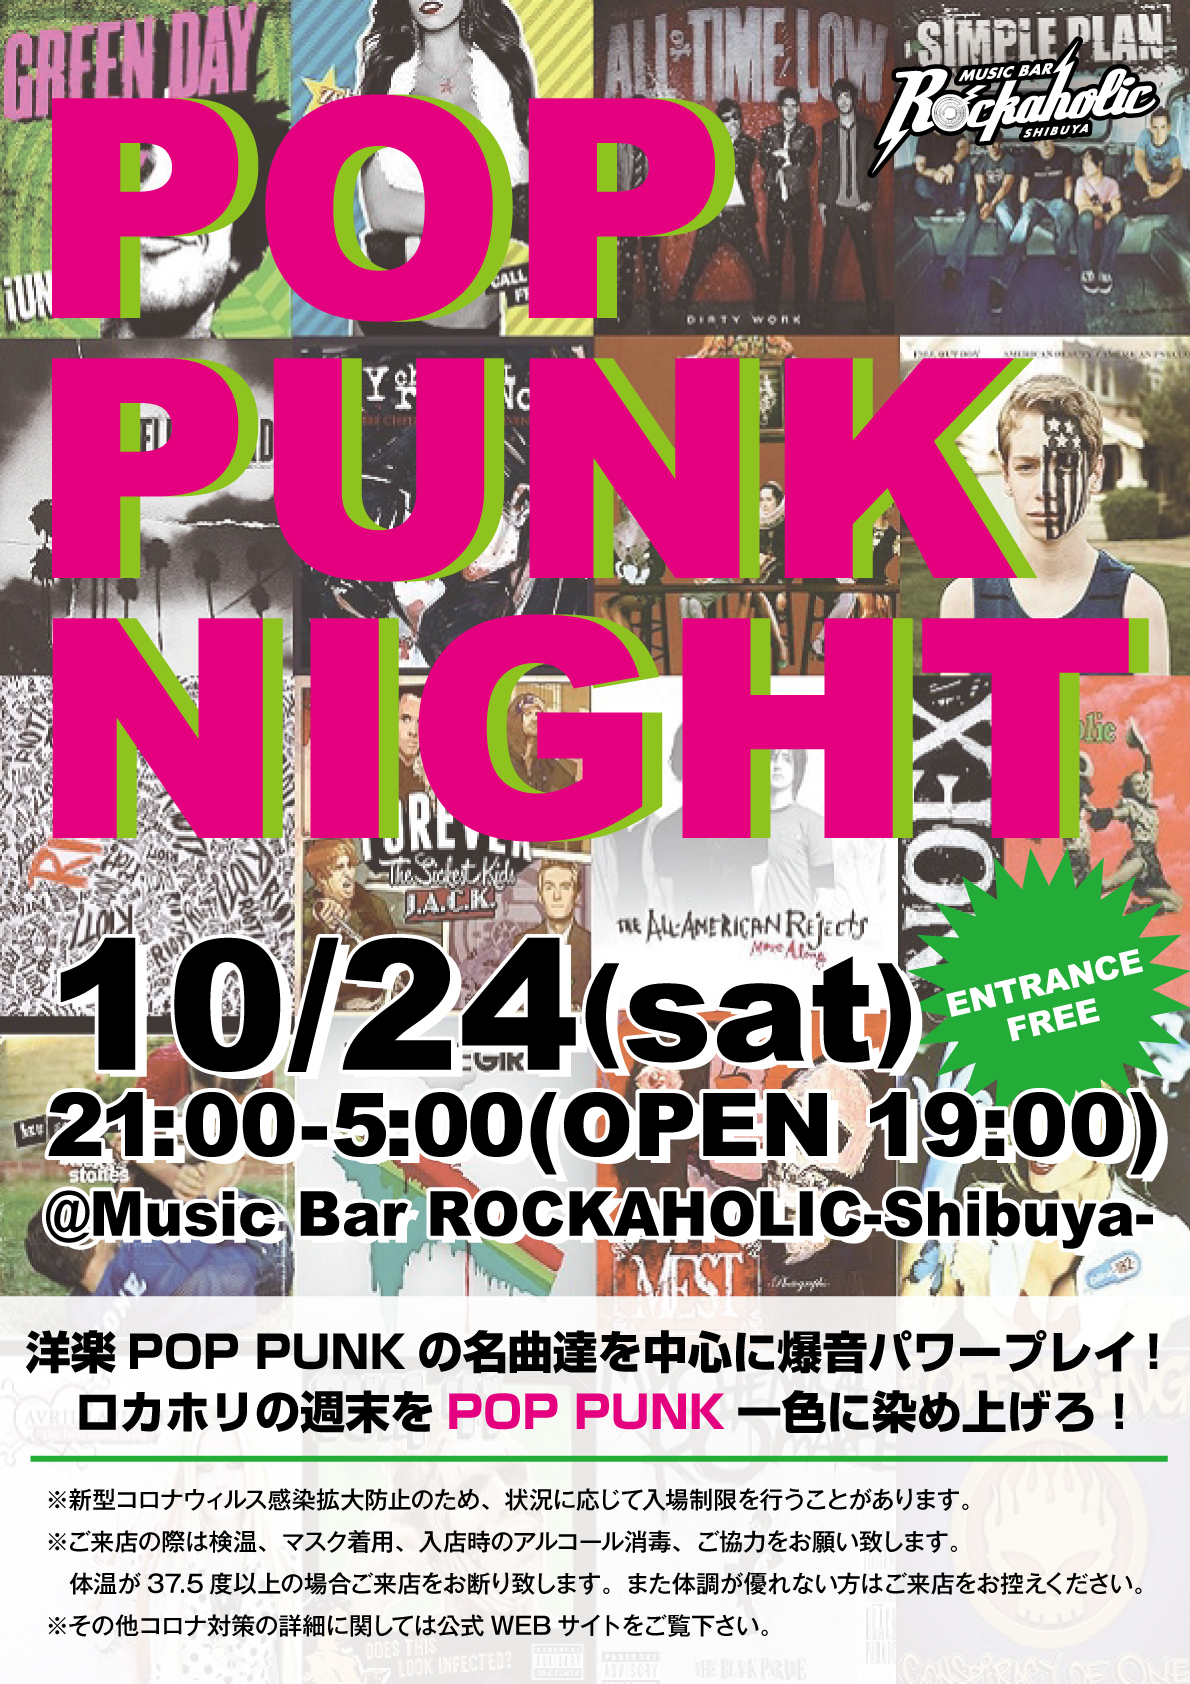 https://bar-rockaholic.jp/shibuya/blog/20201016_105347.jpg